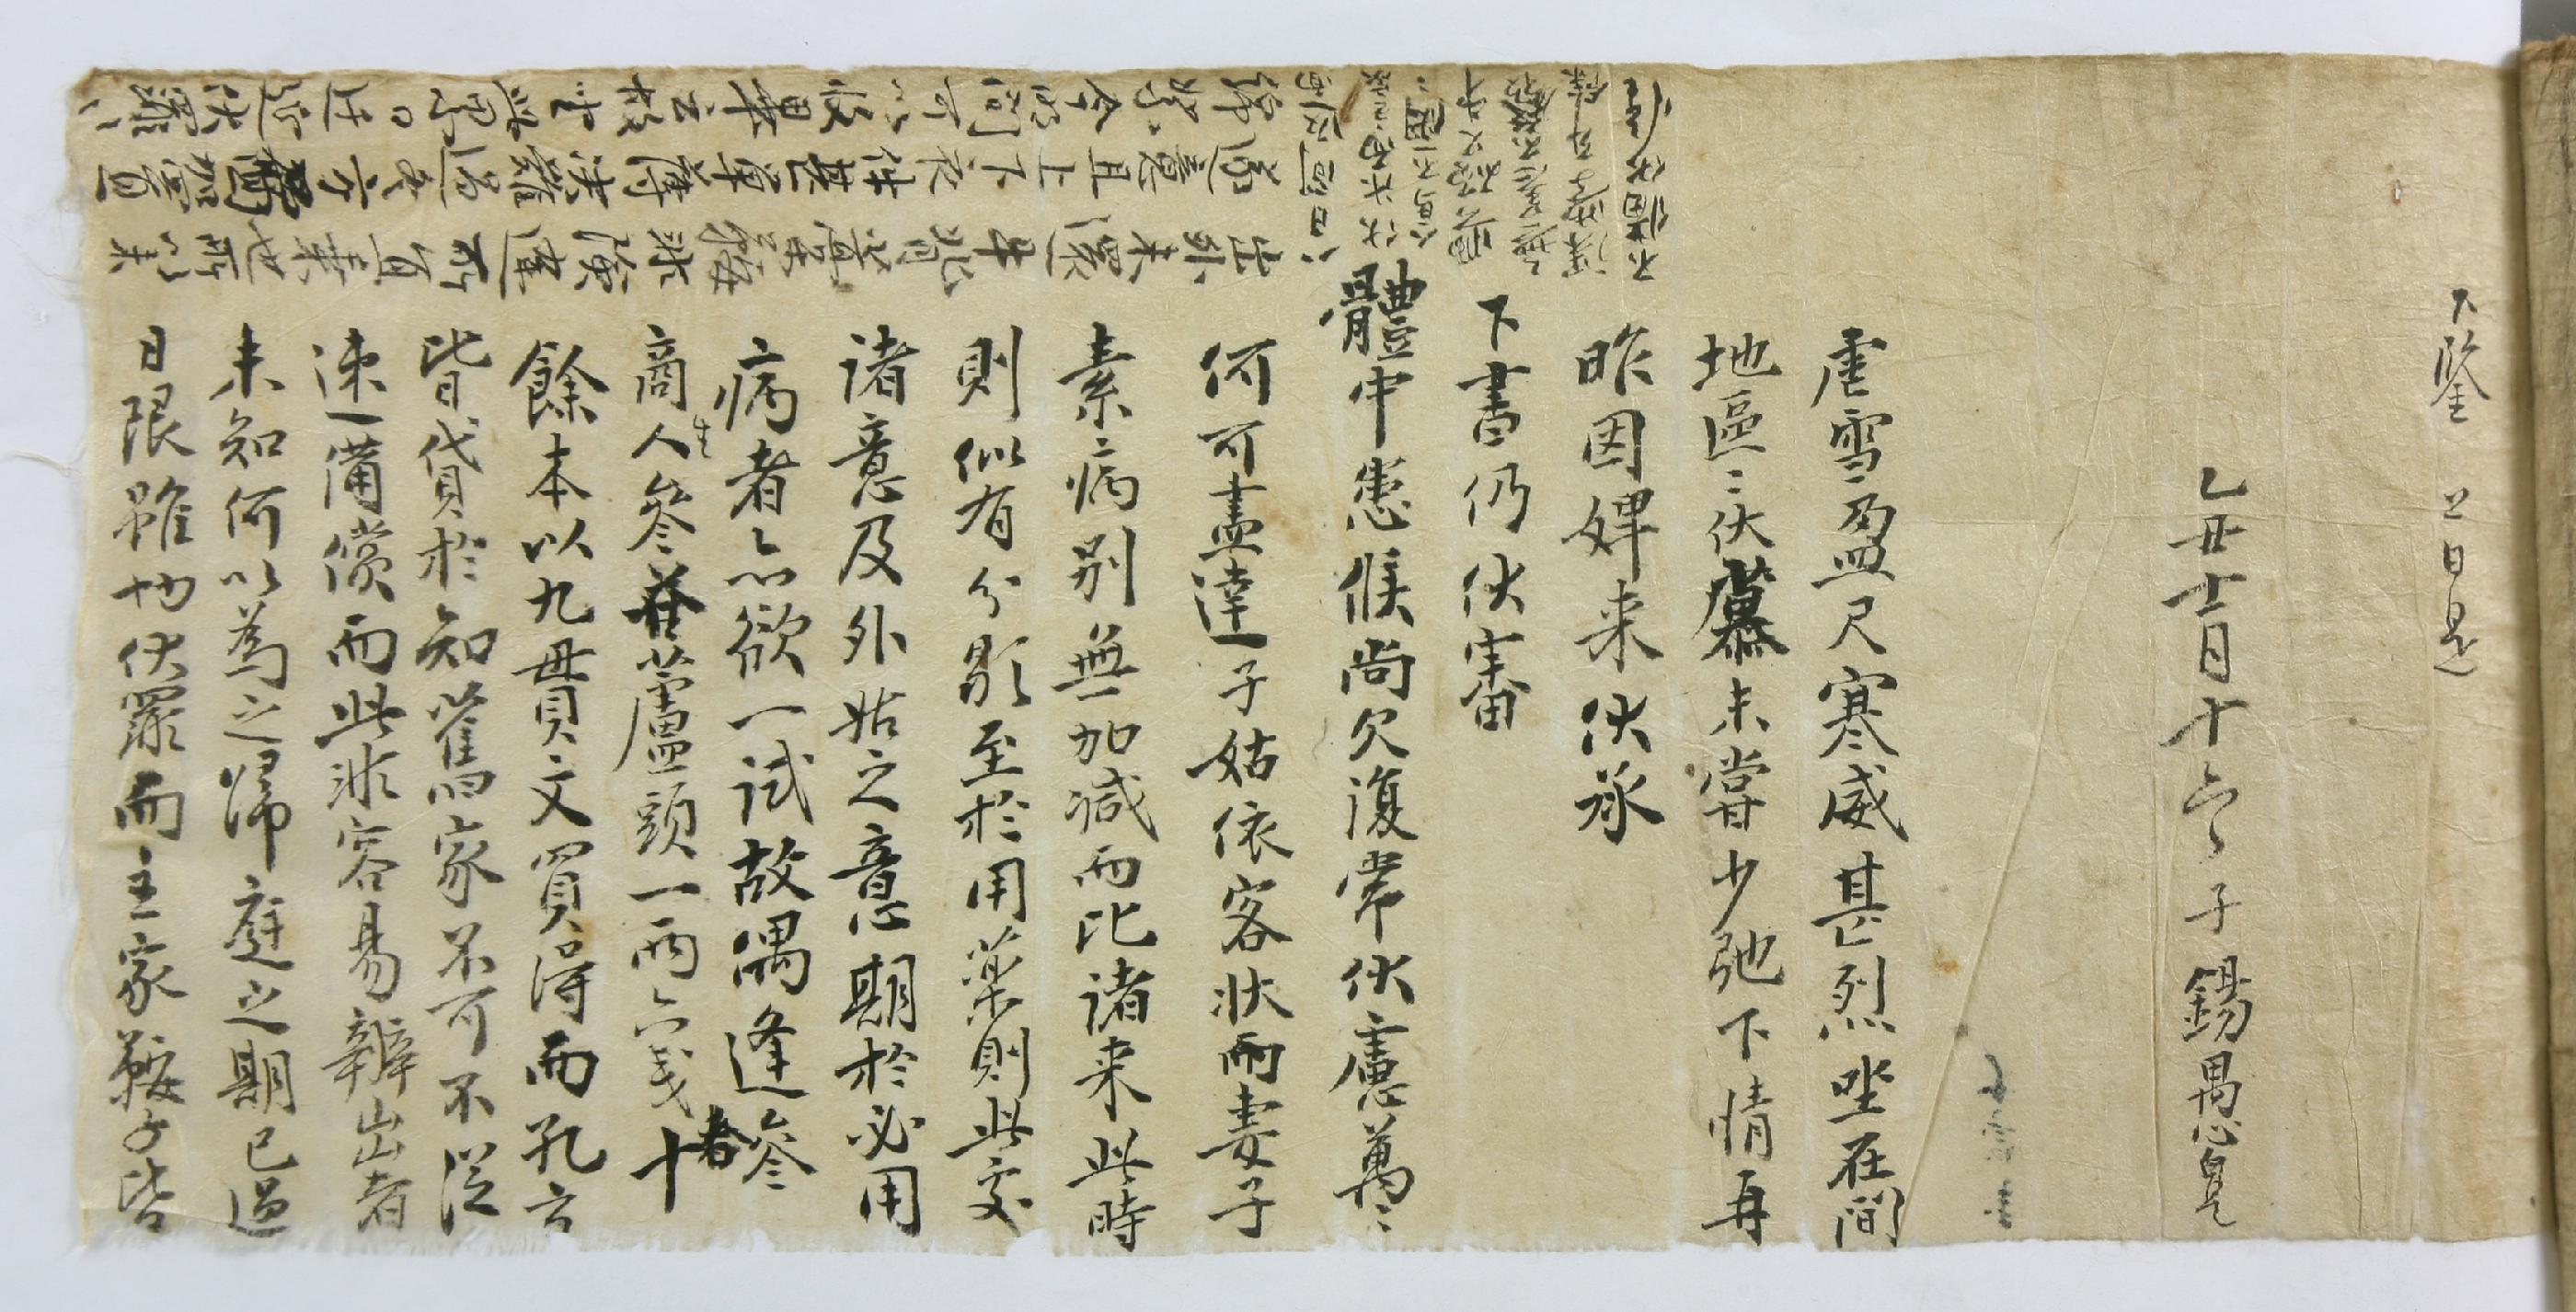 조석우가 1745년에 부친 조시경(趙時經)에게 보낸 편지